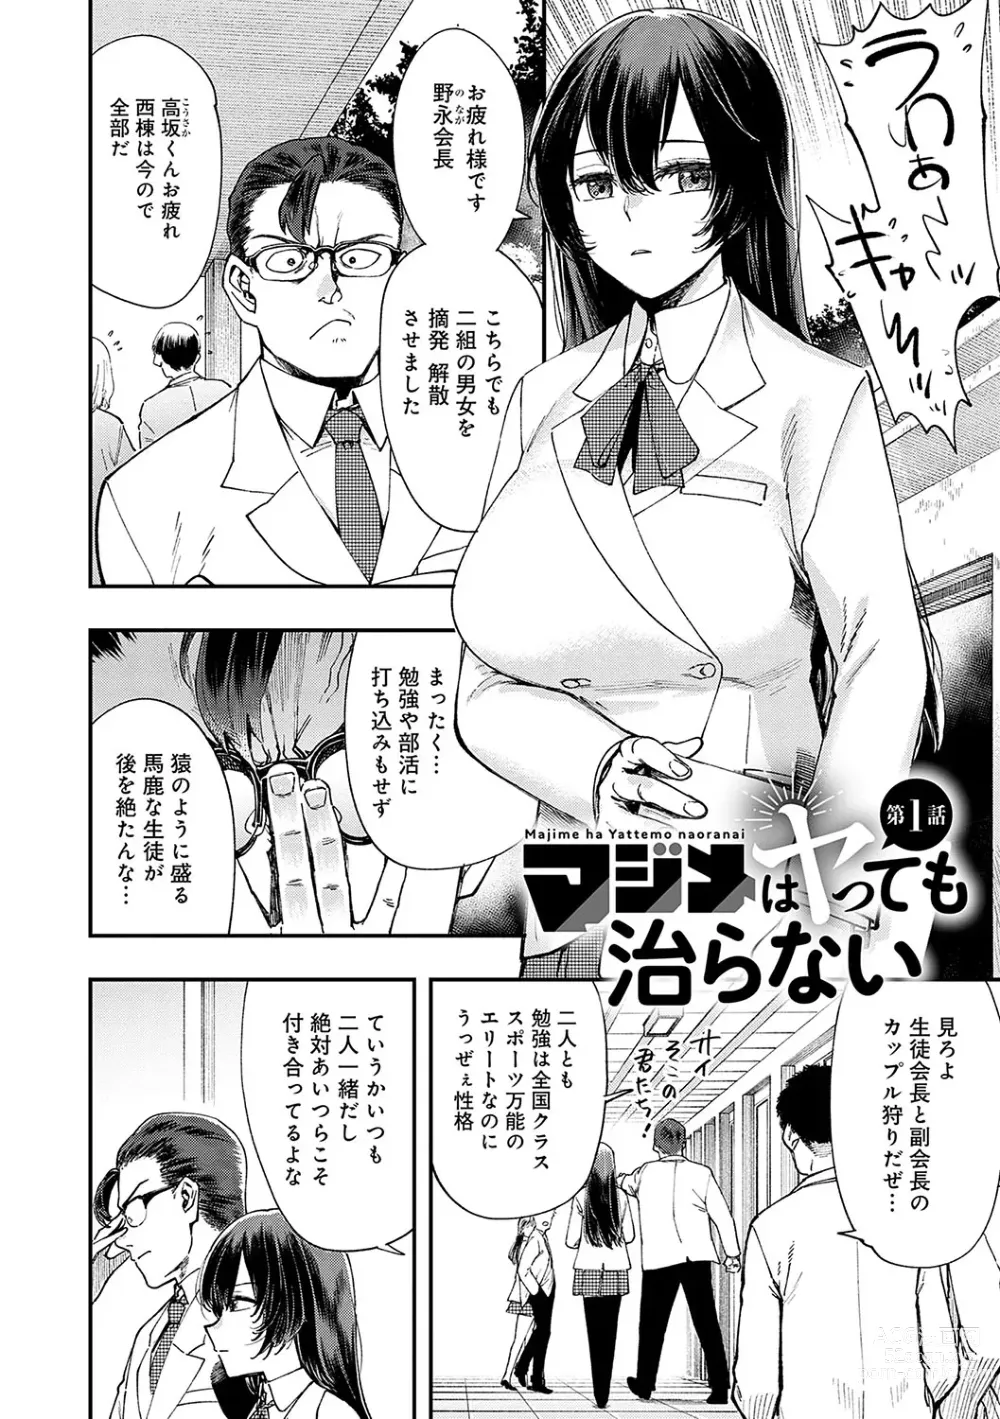 Page 5 of manga Kashikoi Oppai